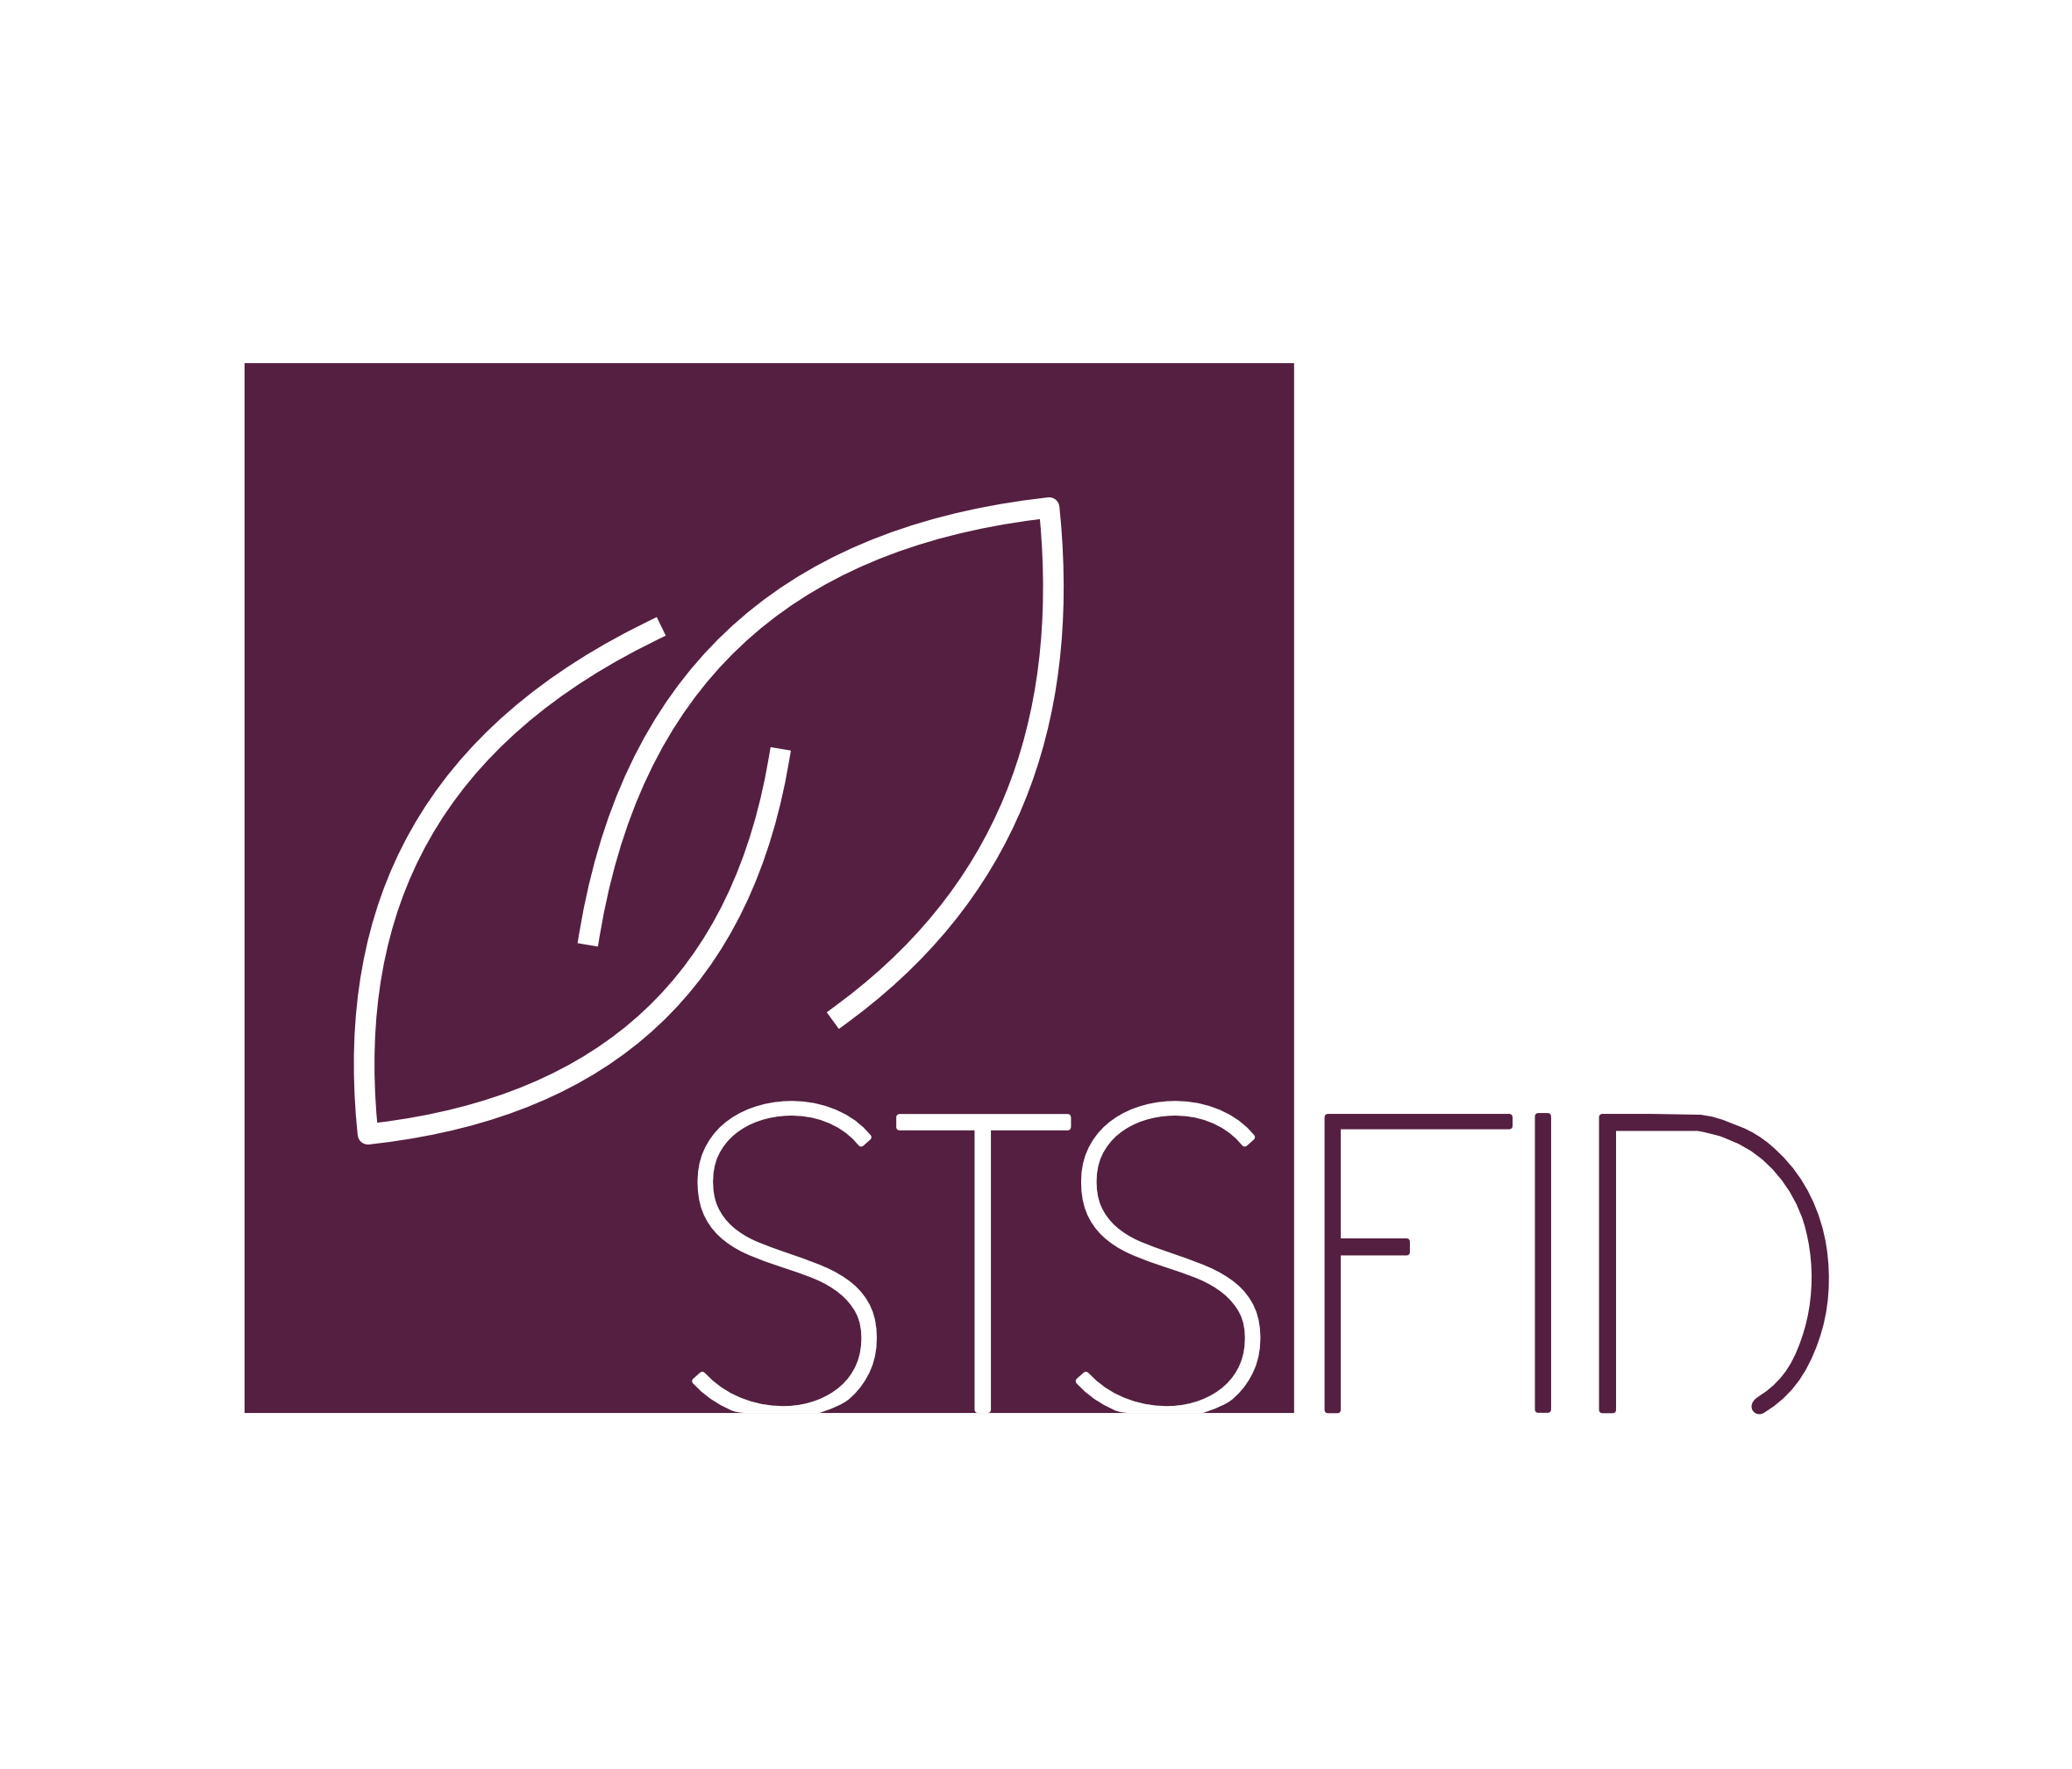 stsfid.ch